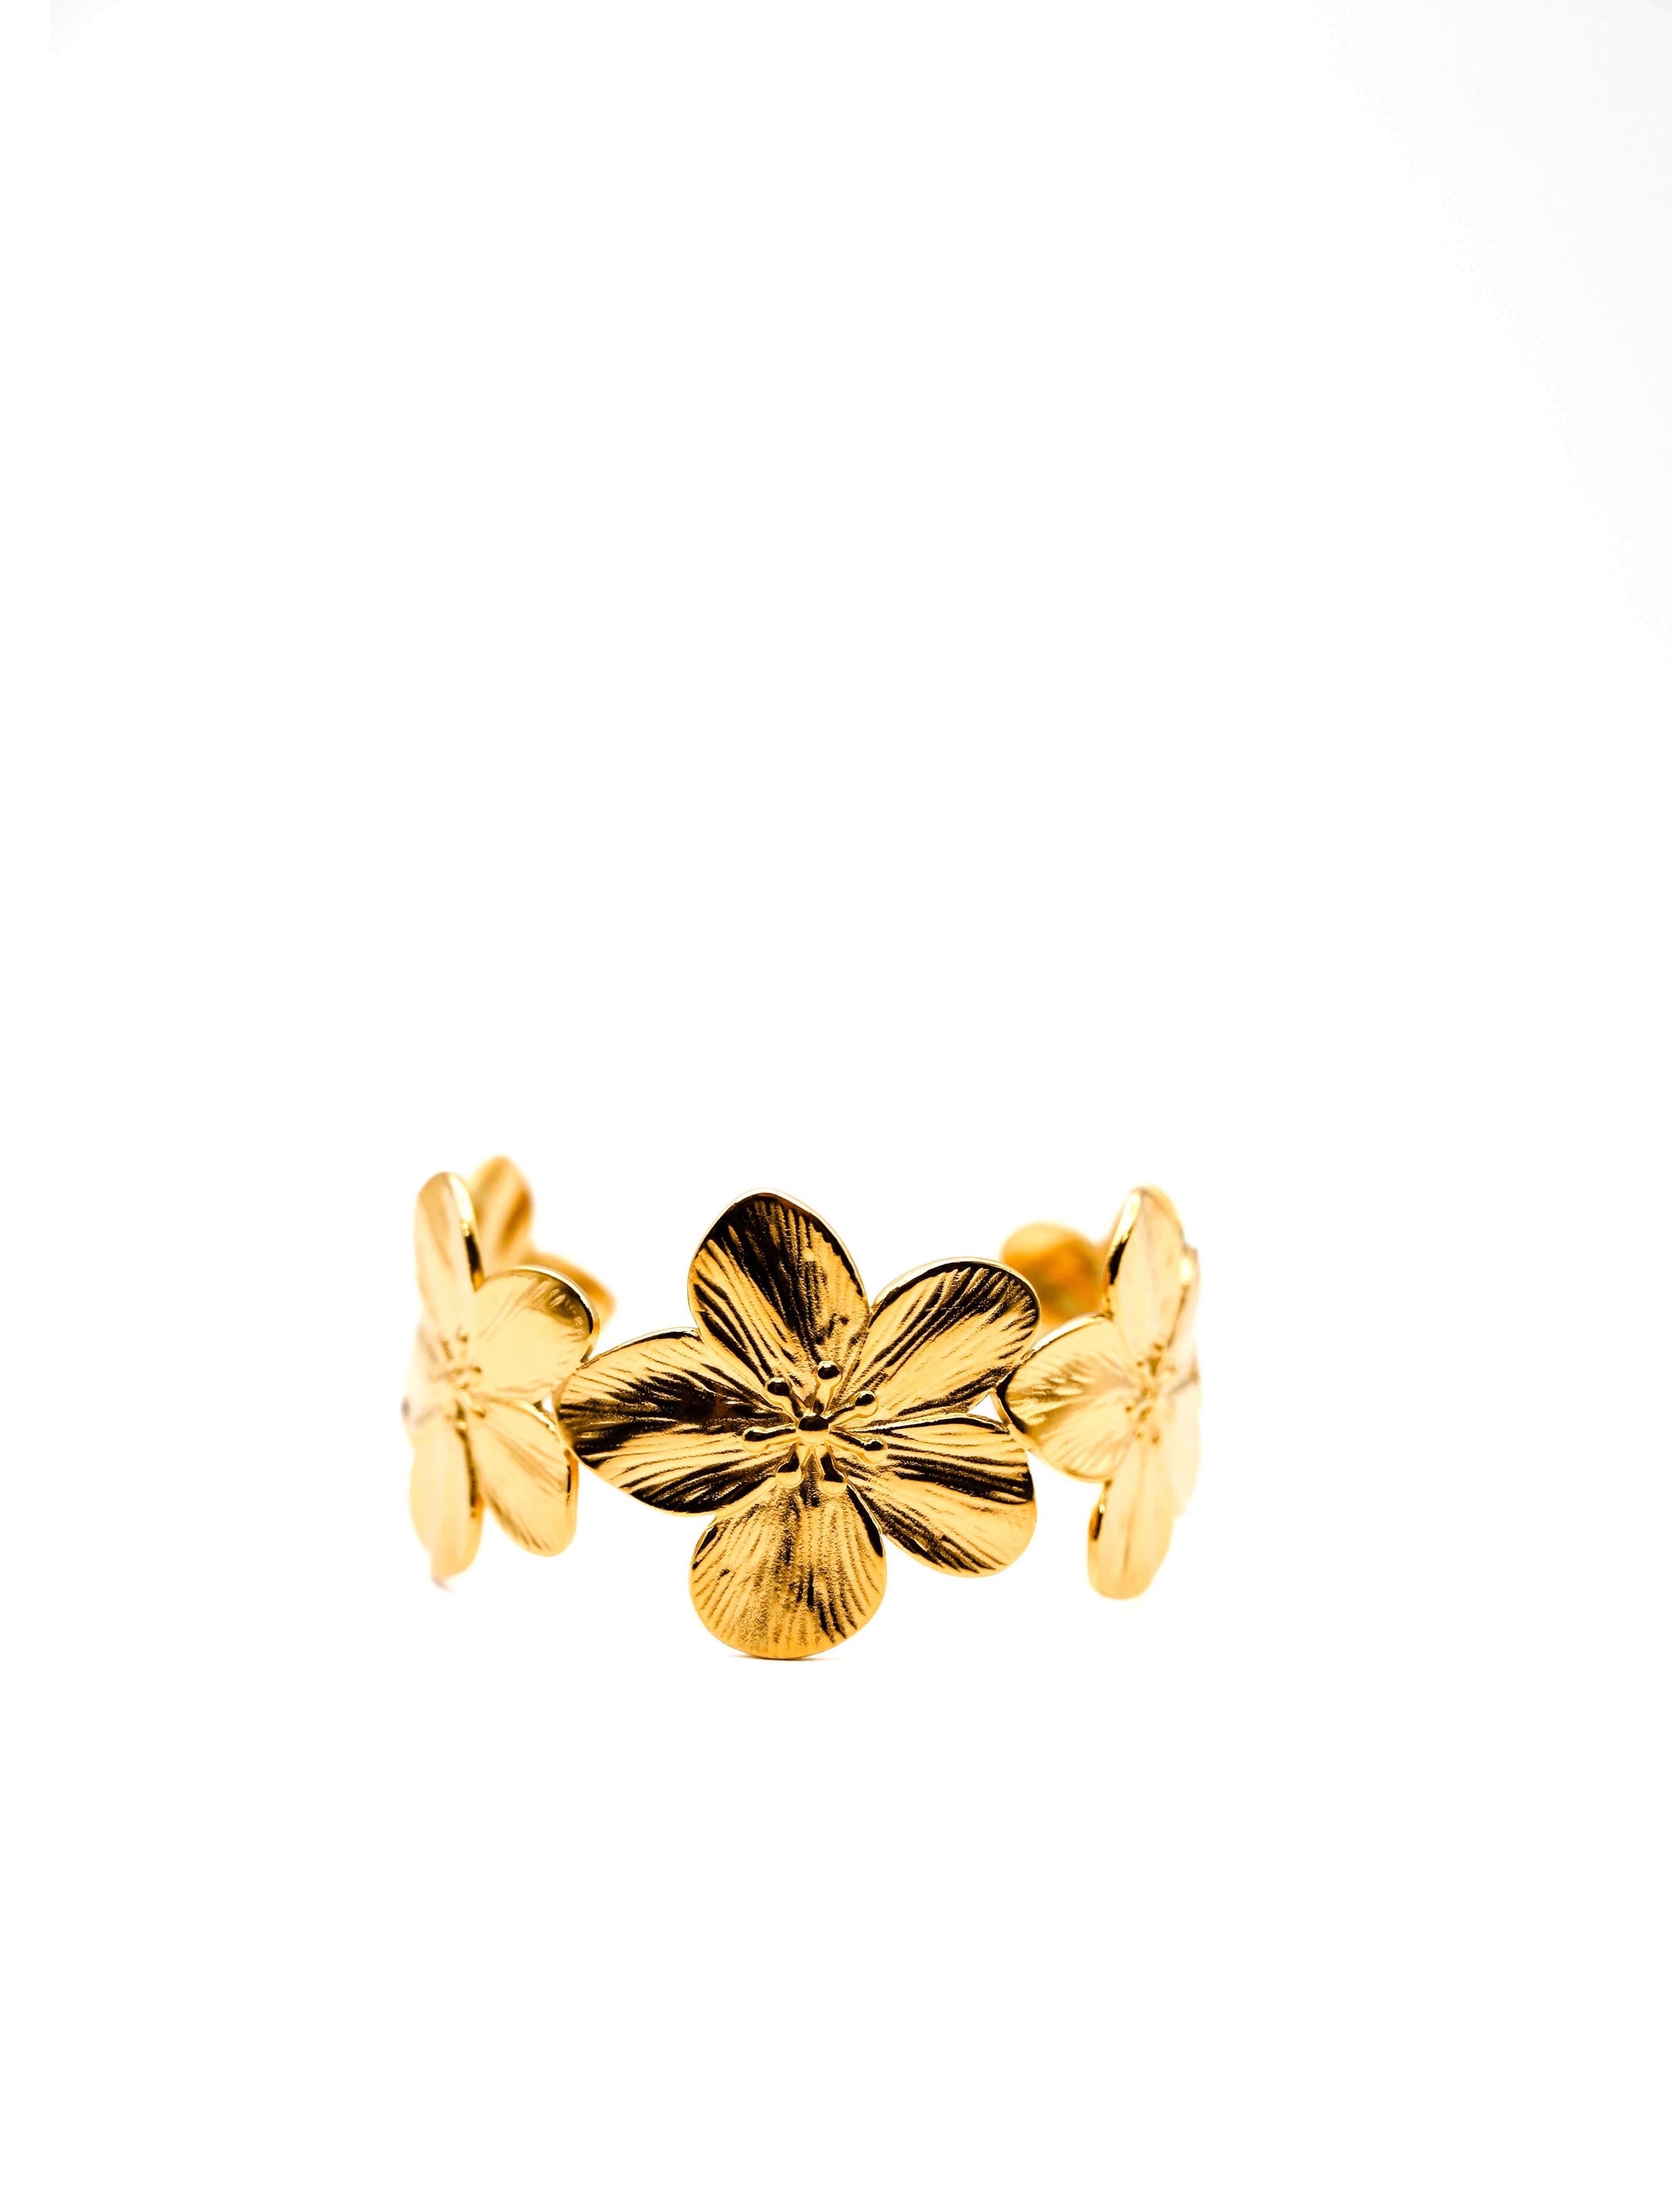 Flower Cuff Bracelet in Gold